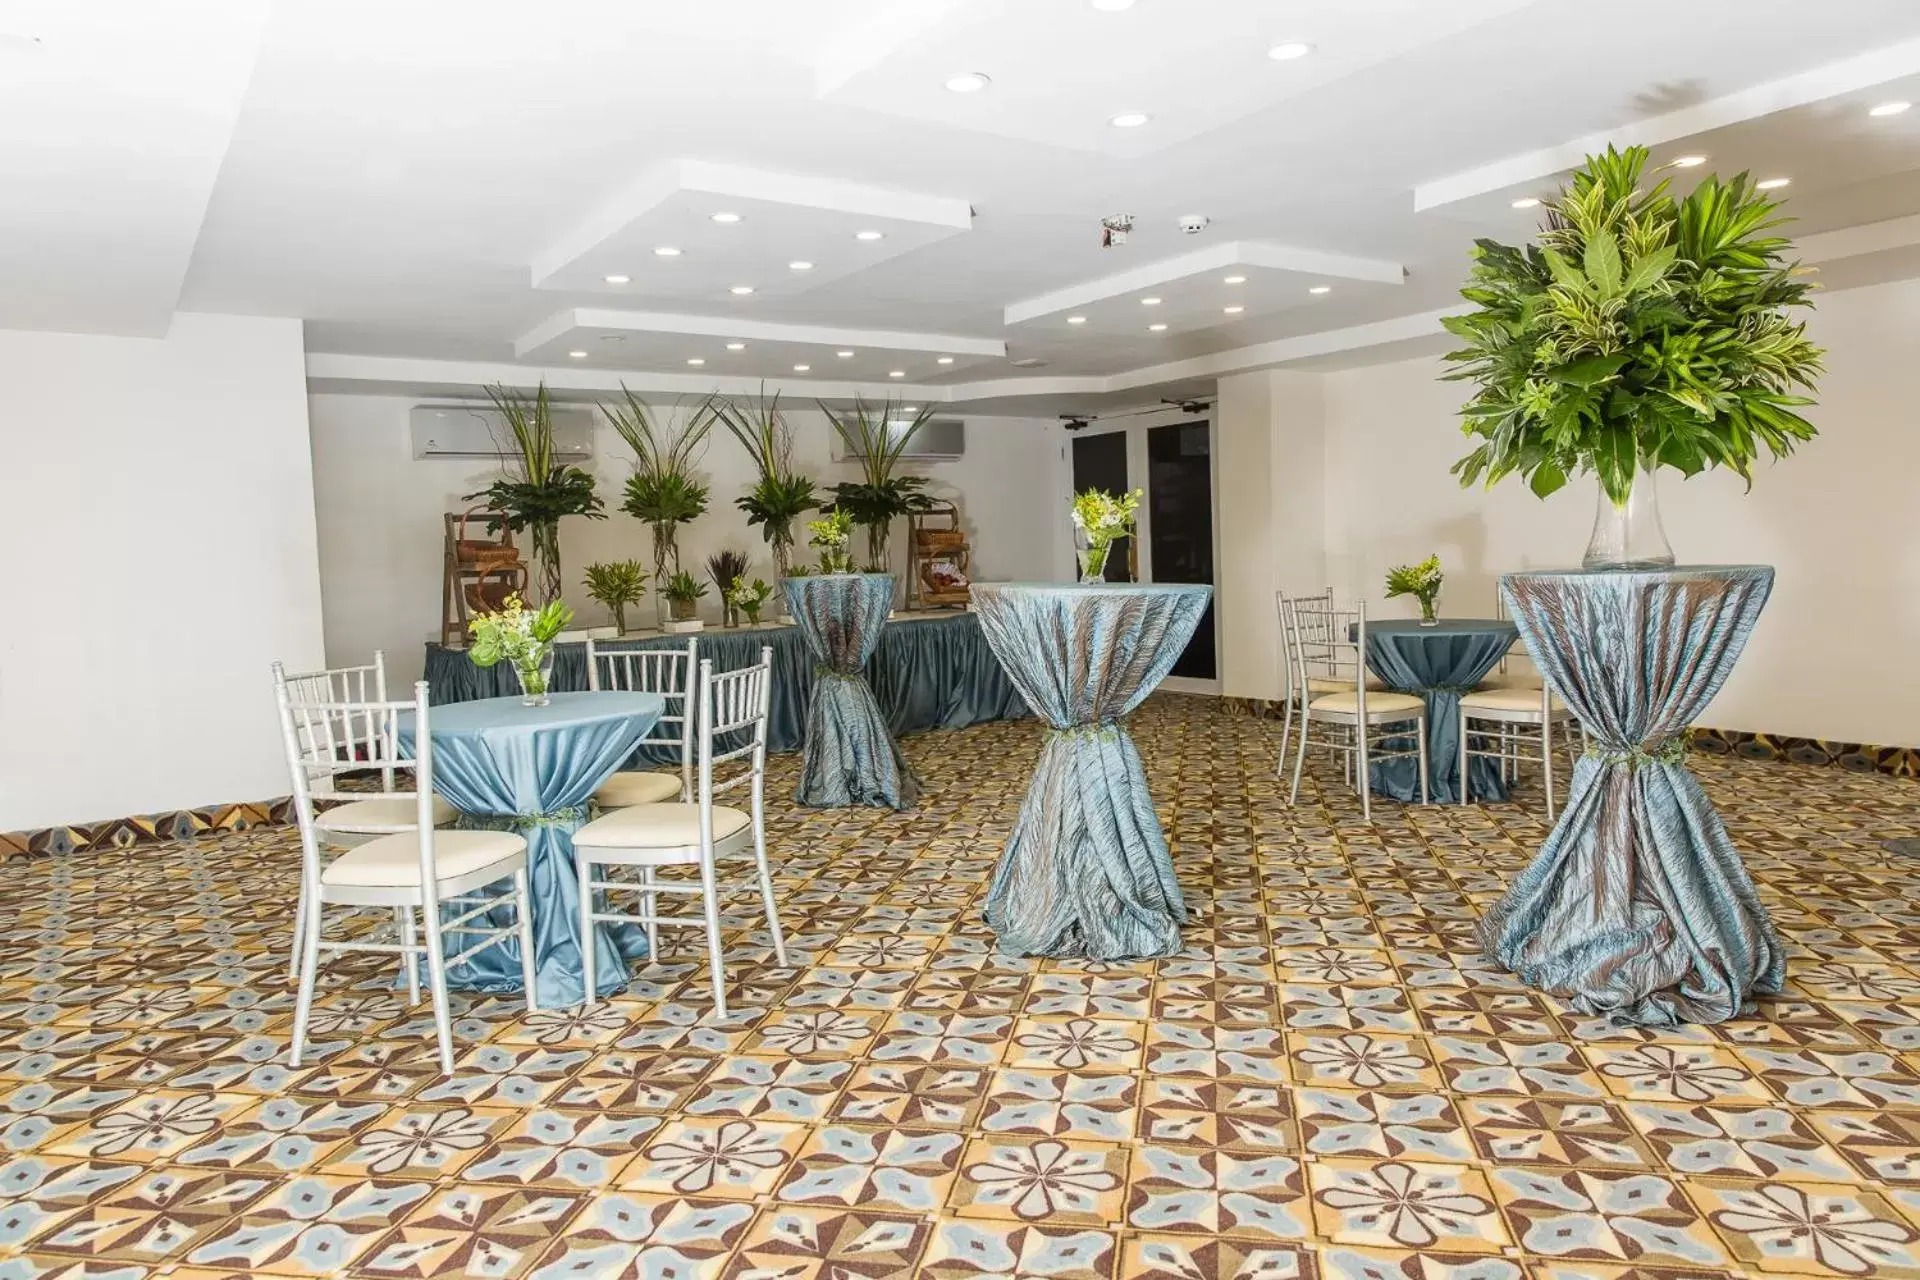 Banquet/Function facilities, Banquet Facilities in Best Western El Dorado Panama Hotel